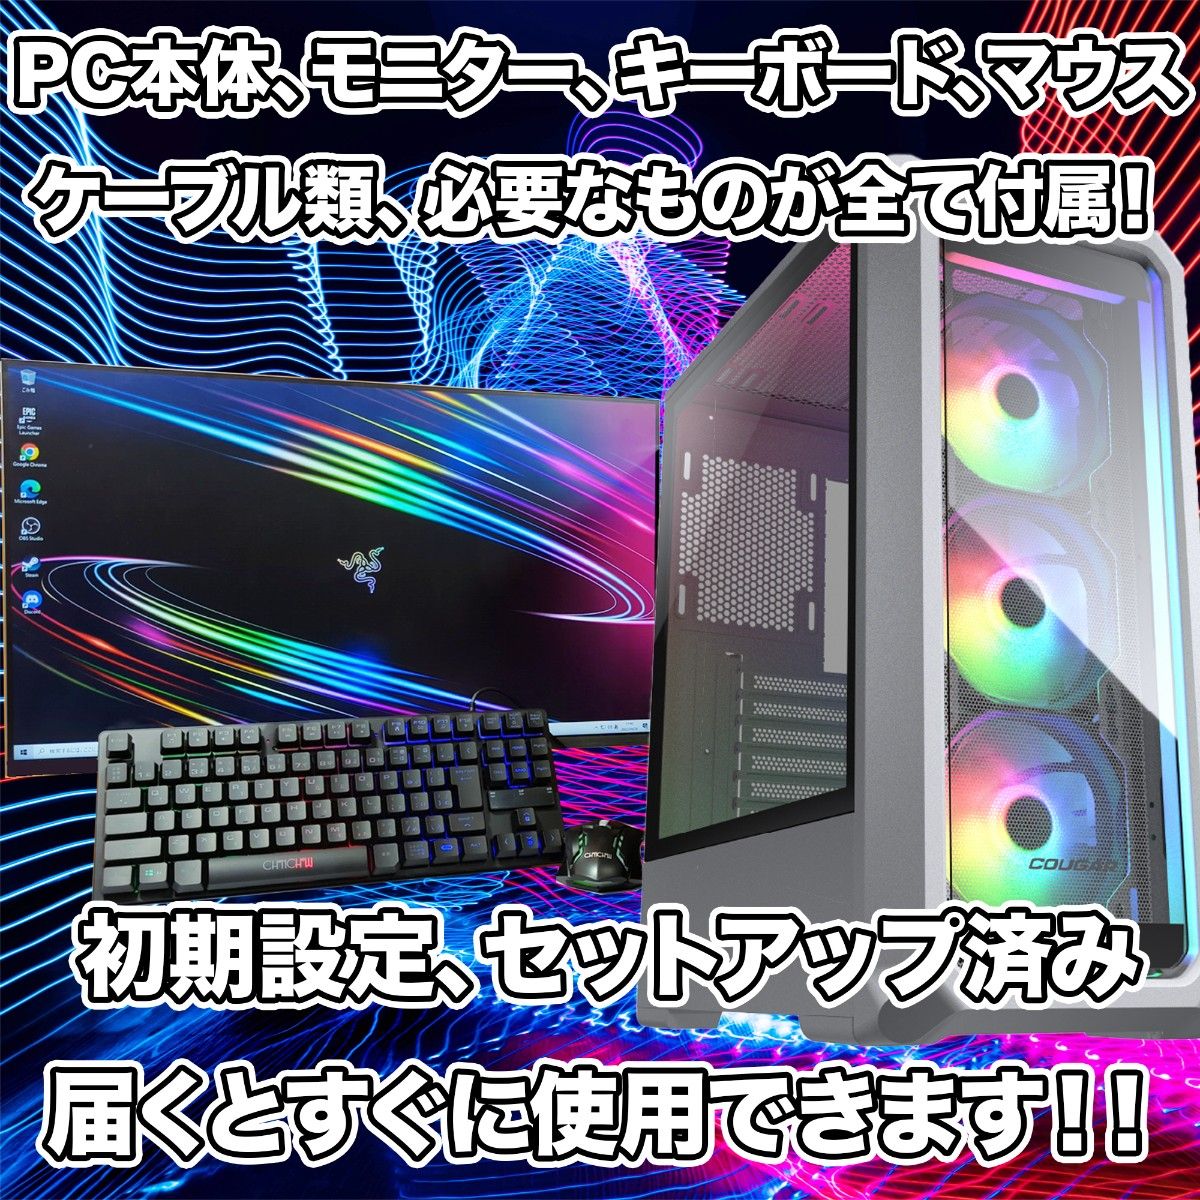 【性能9】RGBファン/高性能ゲーミングPC/フルセット/GTX1070搭載